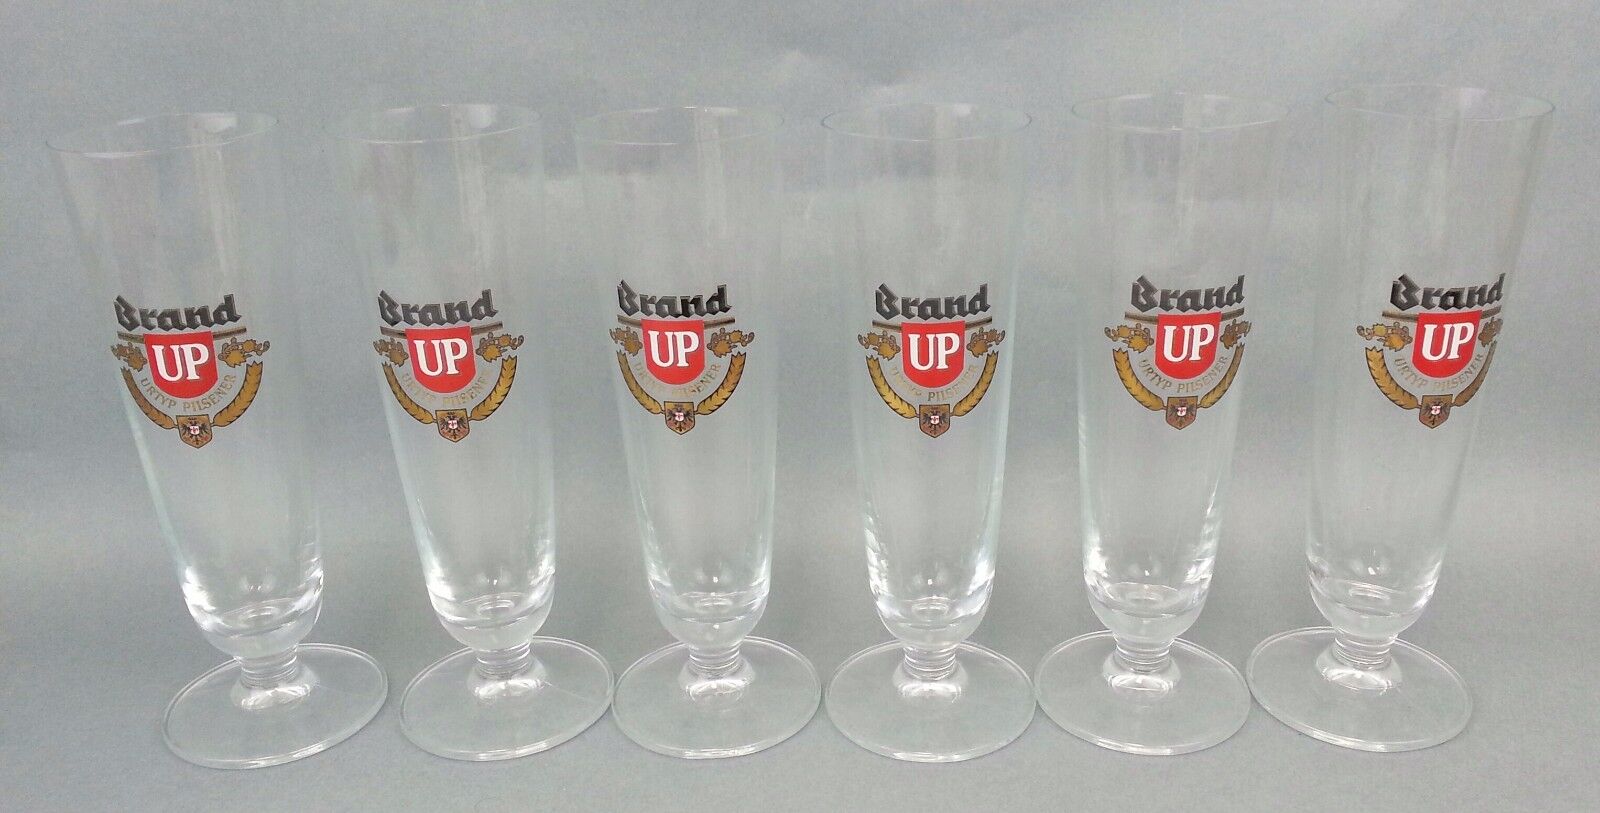 6 Vintage Brand UP 52 Footed Pilsner Beer Glass URTYP Netherlands Wijlre SCARCE